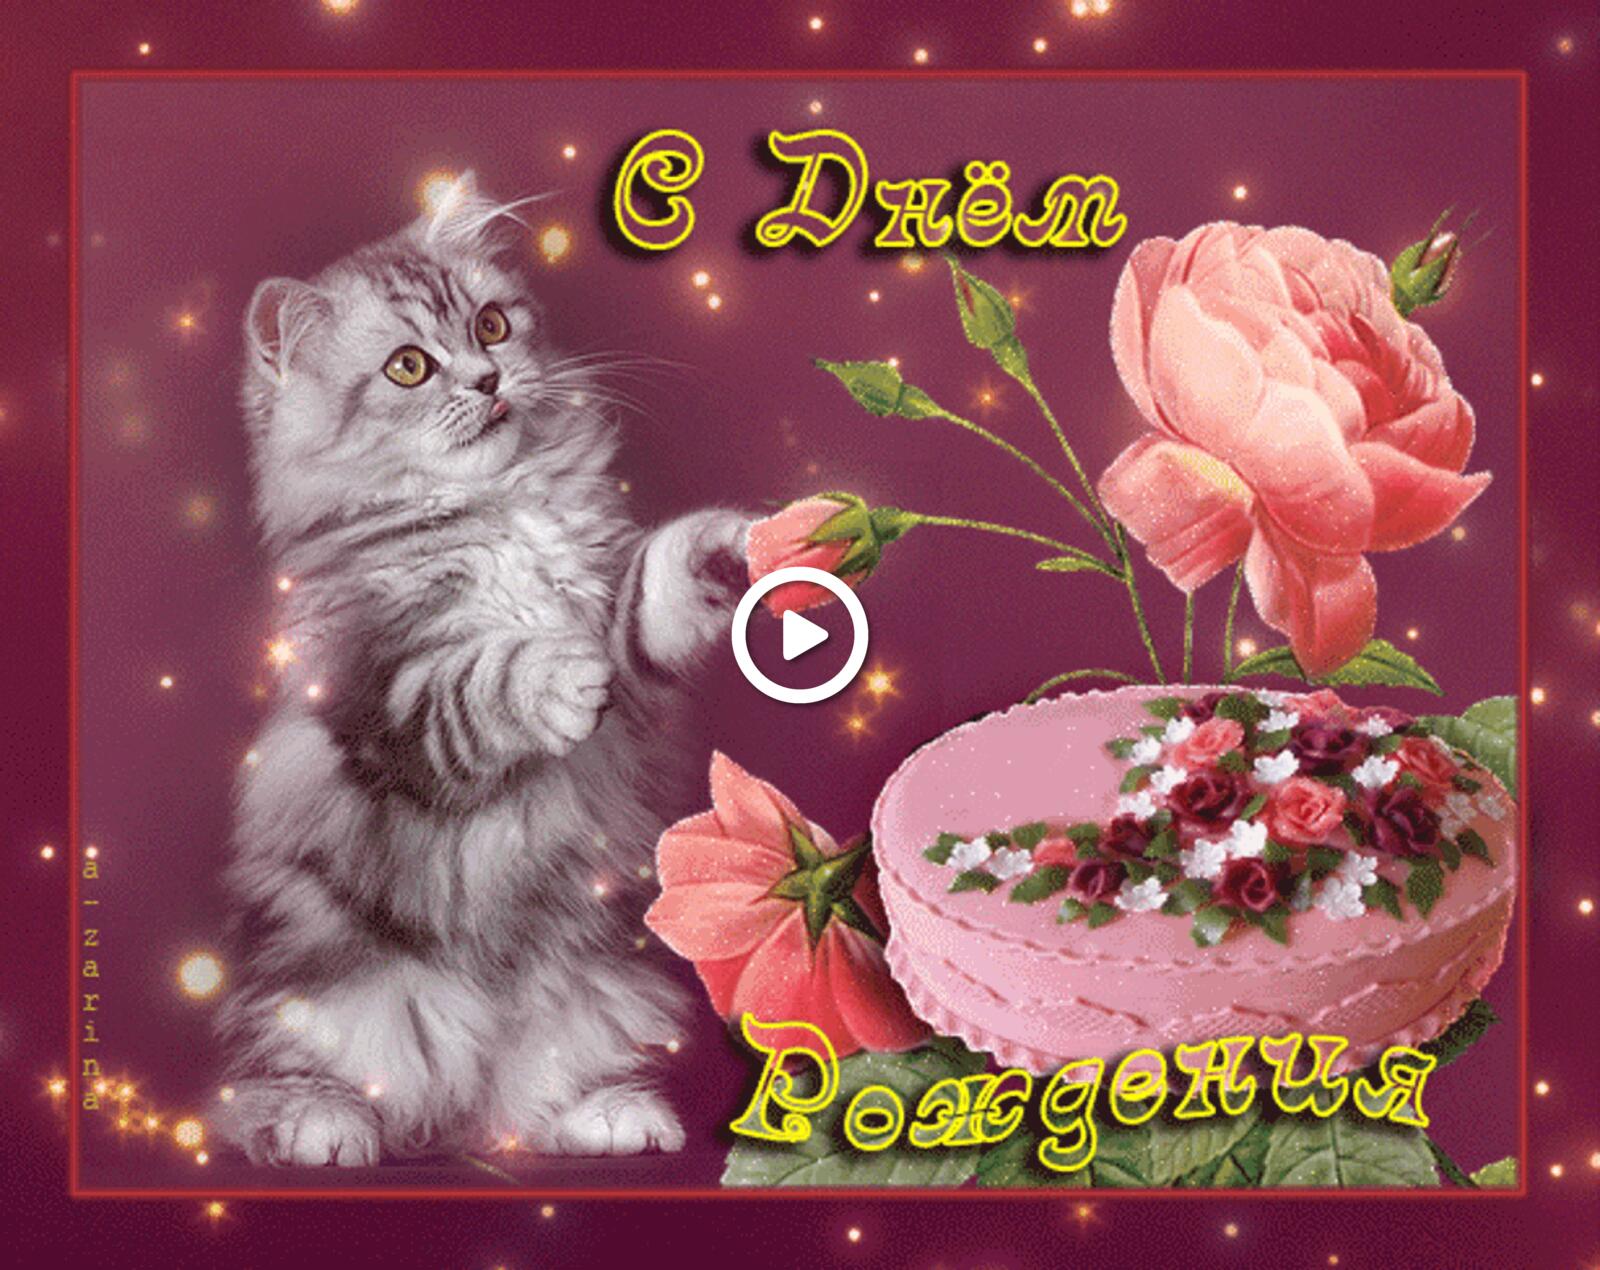 Бесплатная открытка Открытка на день рождения с котенком